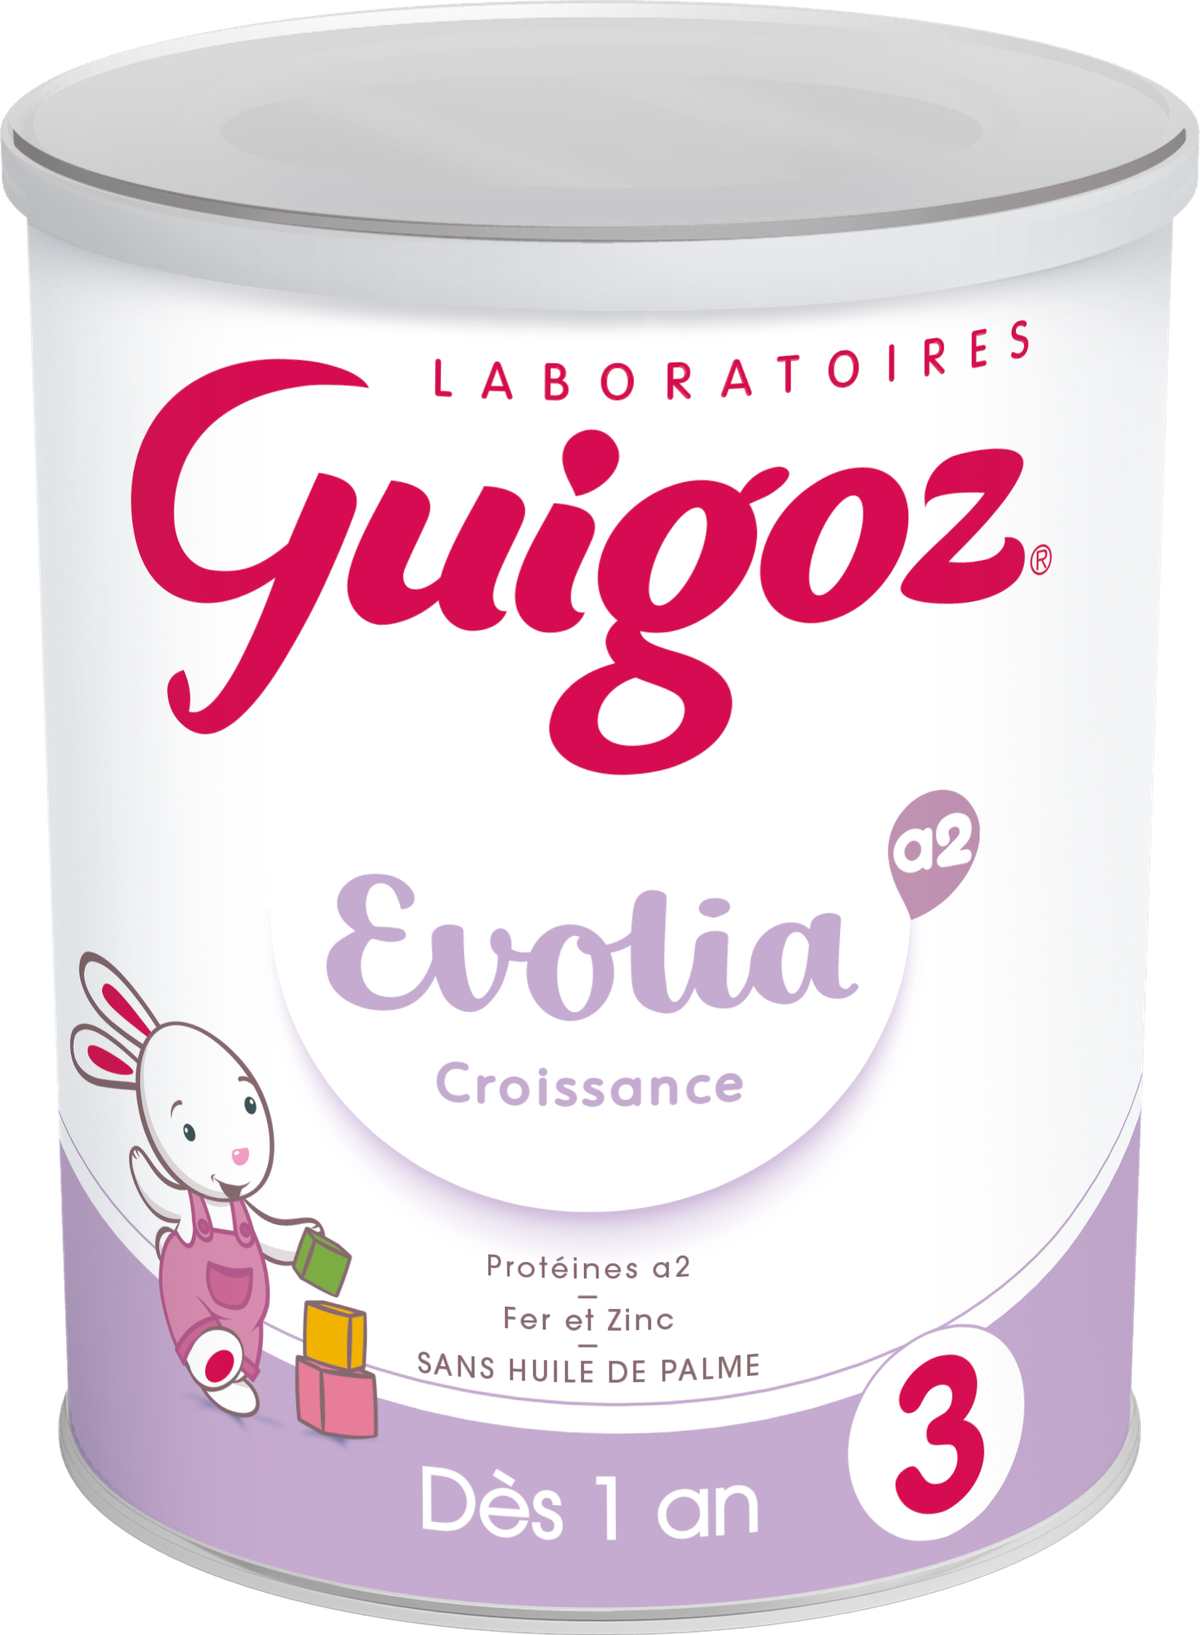 GUIGOZ Evolia a2 Croissance - Dès 1 an - 800g